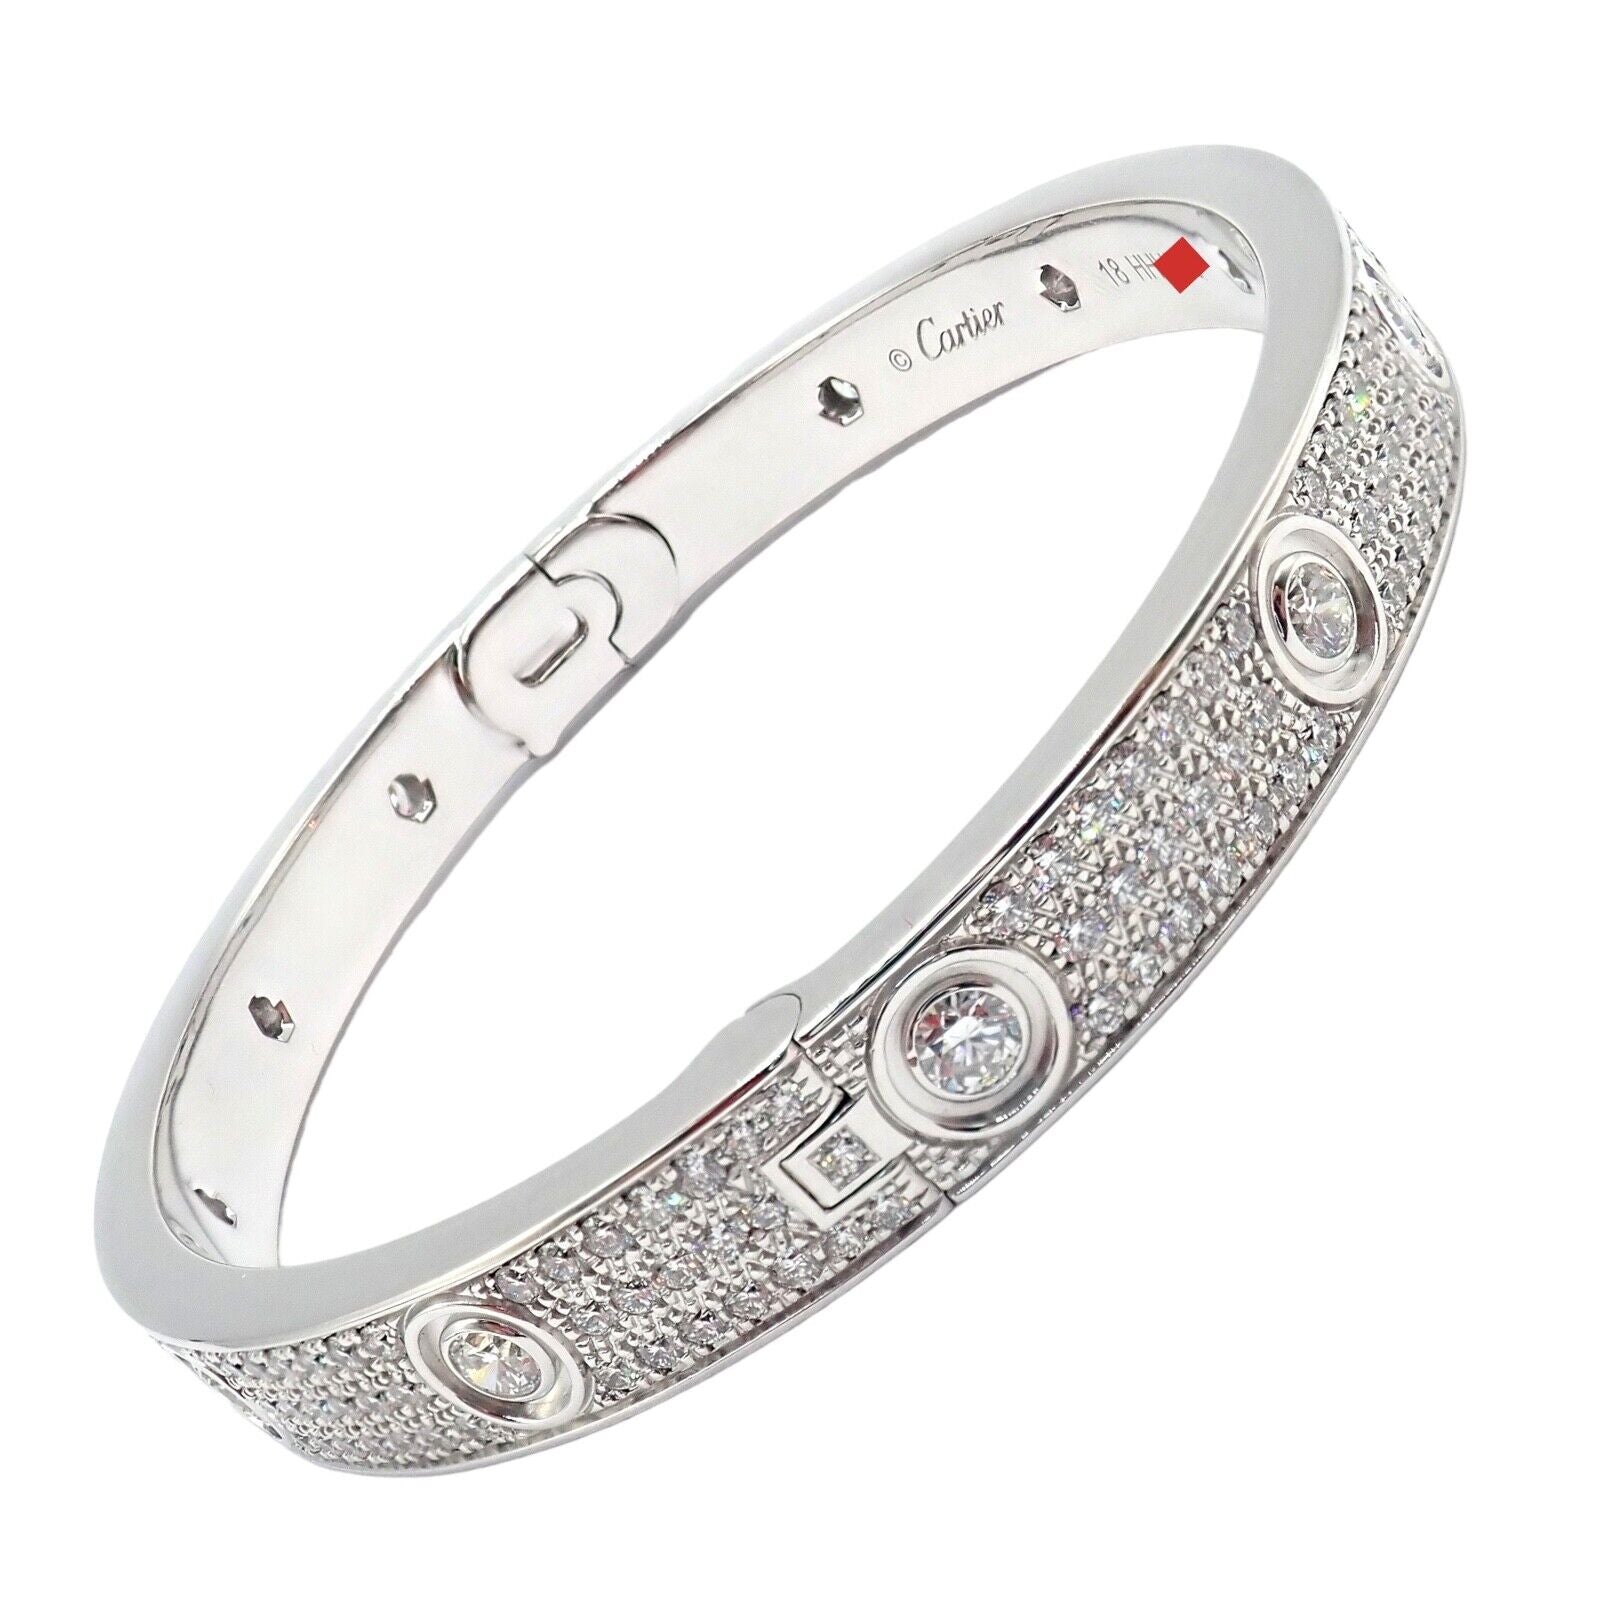 LOVE# bracelet, diamond-paved